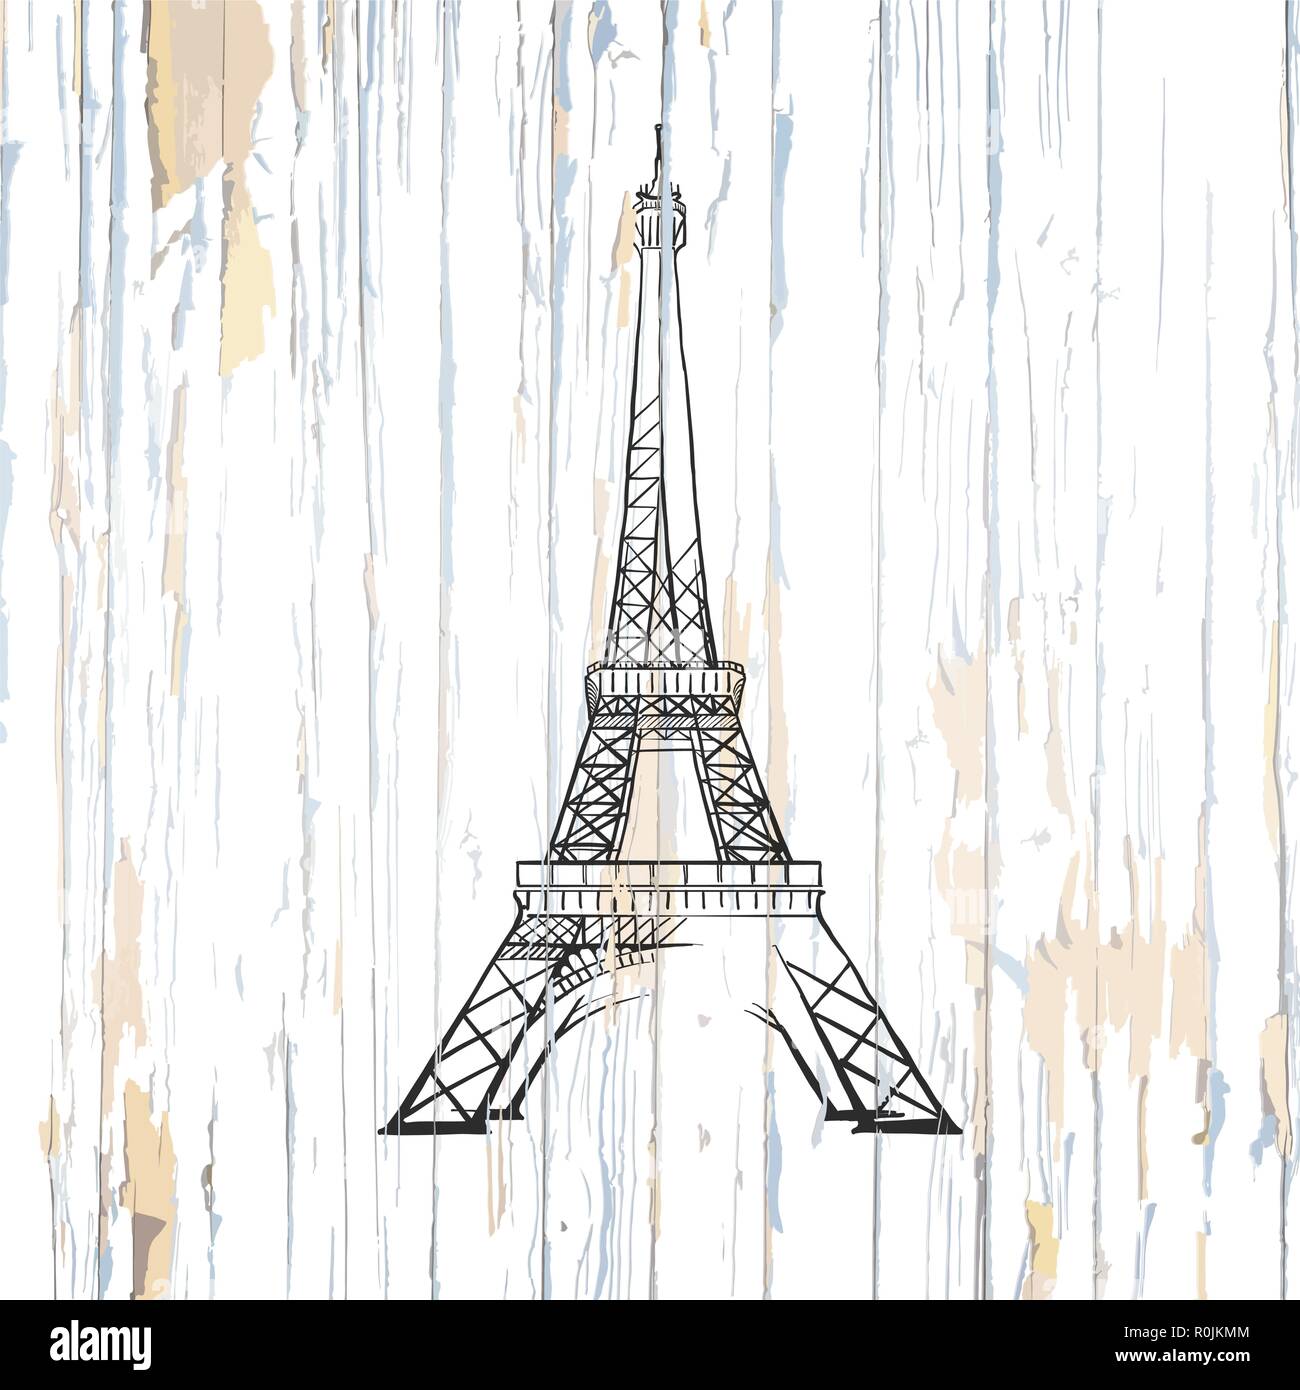 La Tour Eiffel s'appuyant sur le bois. Vector illustration sur fond vintage. Illustration de Vecteur